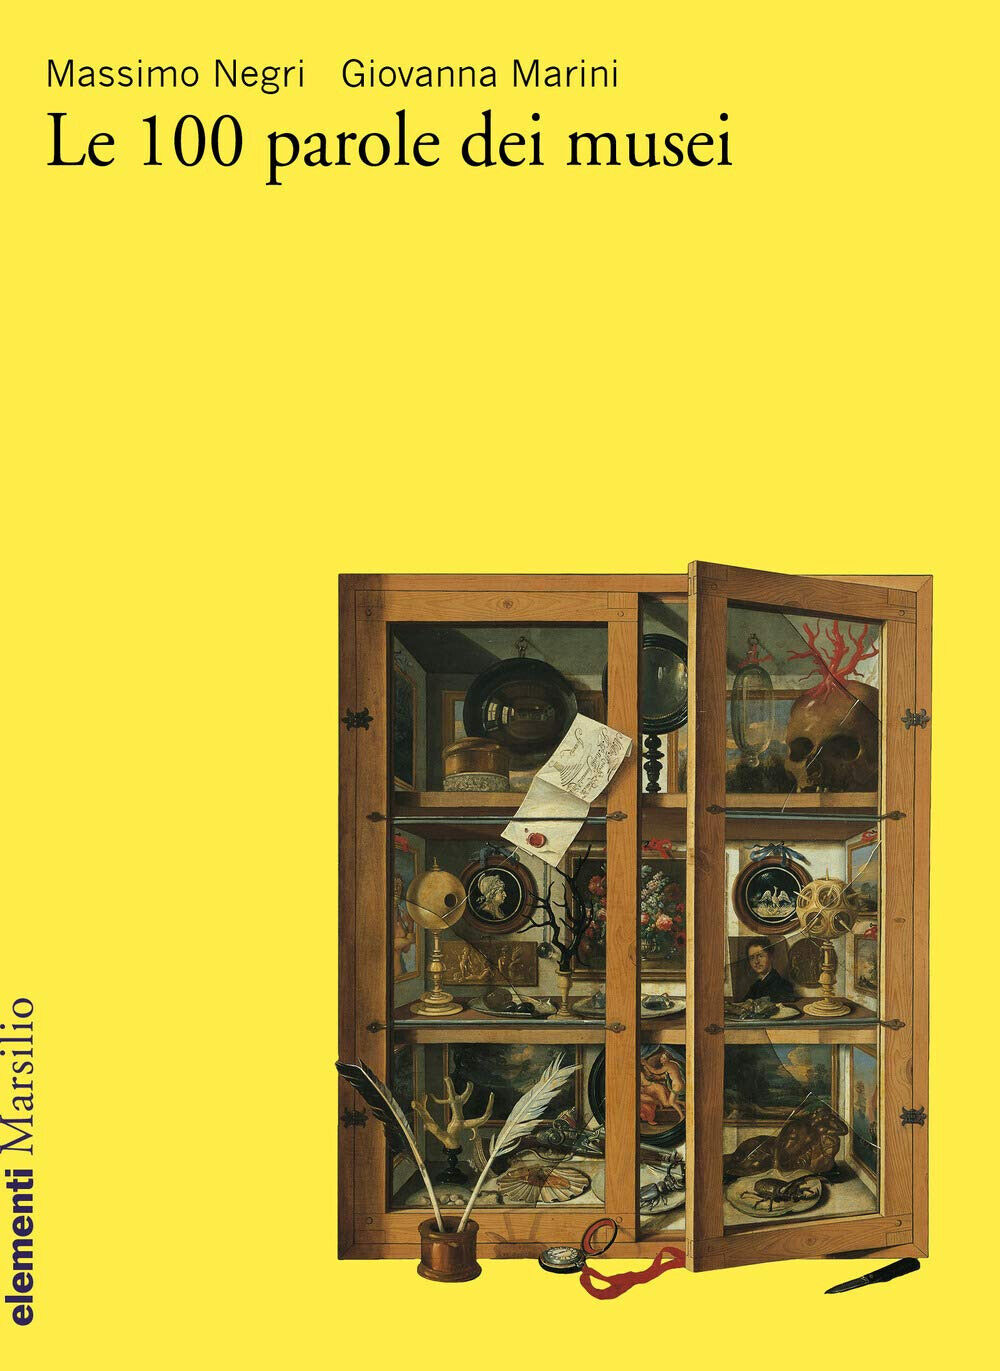 Le 100 parole dei musei di Massimo Negri, Giovanna Marini - Marsilio, 2020